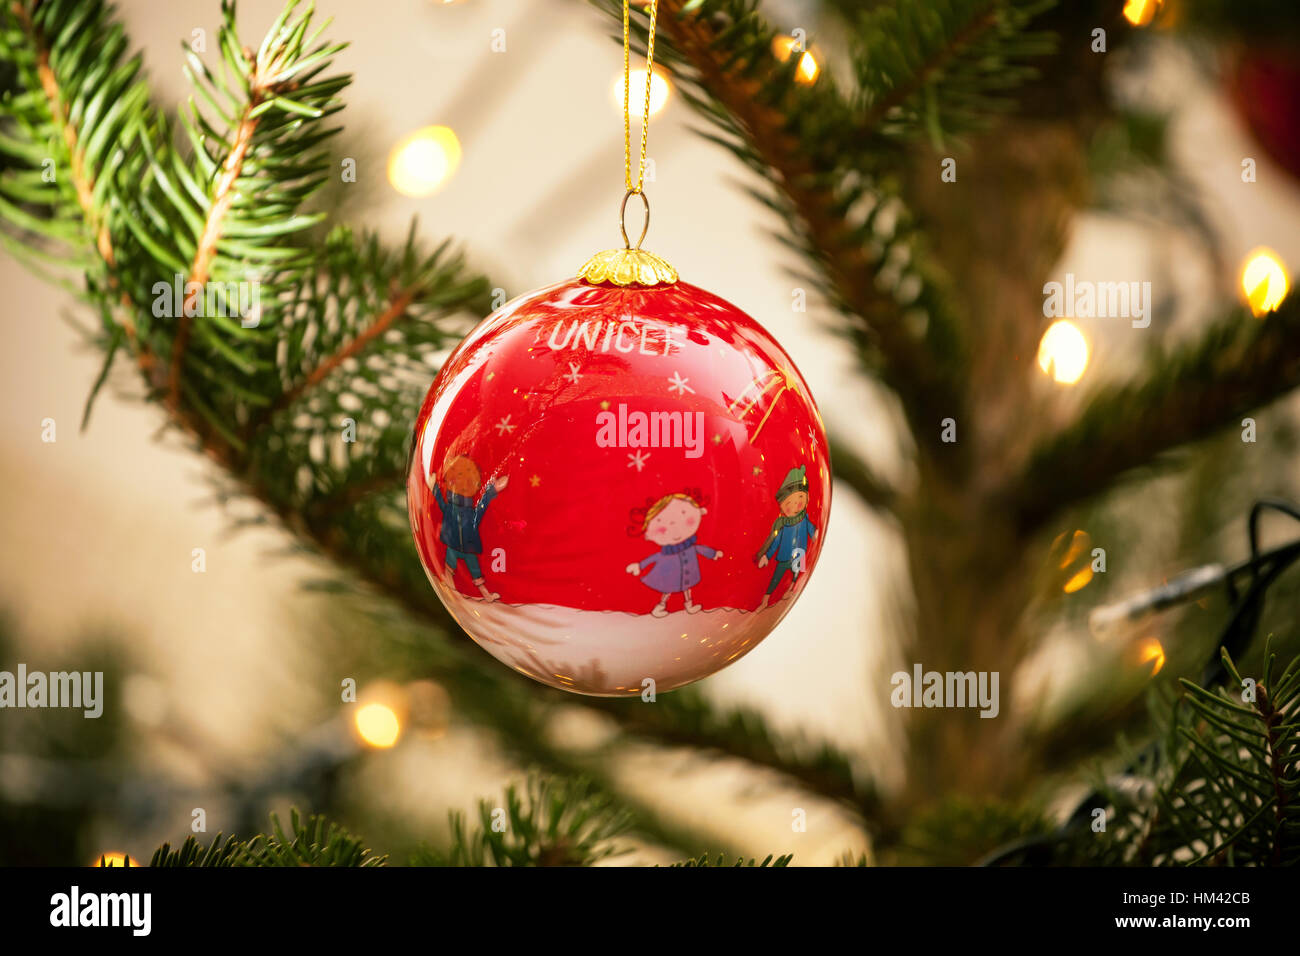 Empoli, Italien - 21. Dezember 2016: Unicef-Ball auf Christams Baum. Die Ornament-Markt UNICEF hilft die am stärksten gefährdeten Kinder in der Welt. Jedes gif Stockfoto